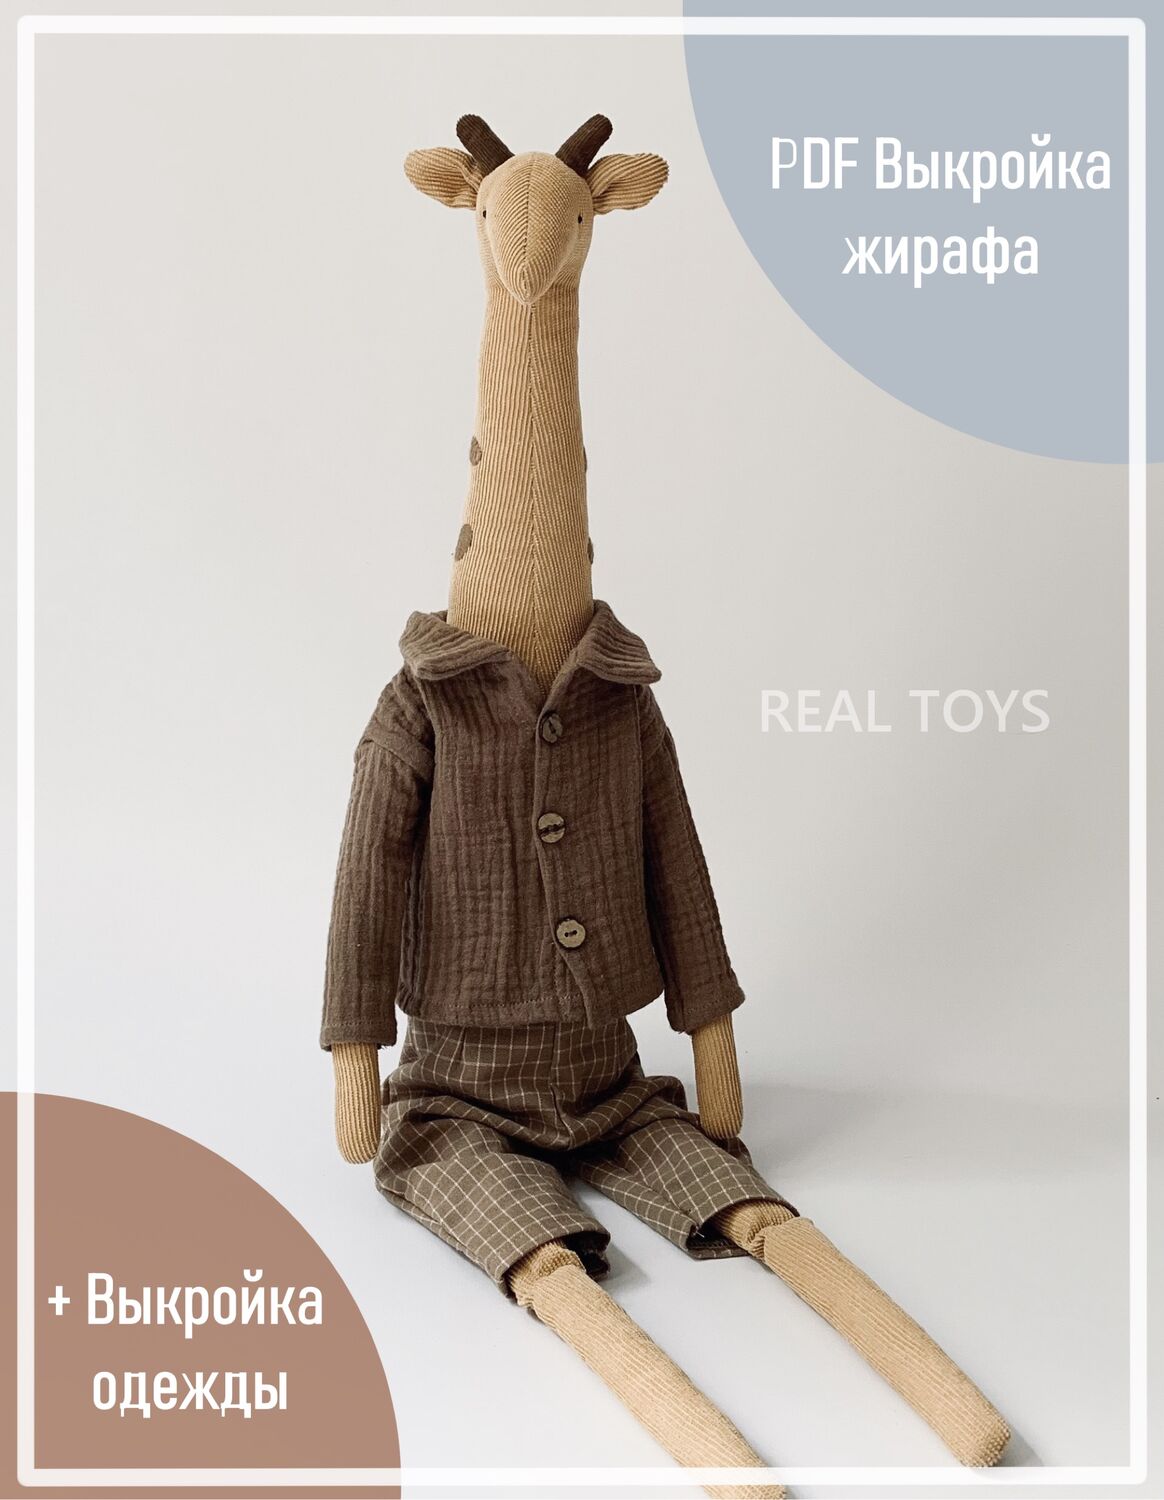 [Купить] мягкие игрушки жирафы 4шт. в Тольятти оптом. База мягких игрушек жирафов